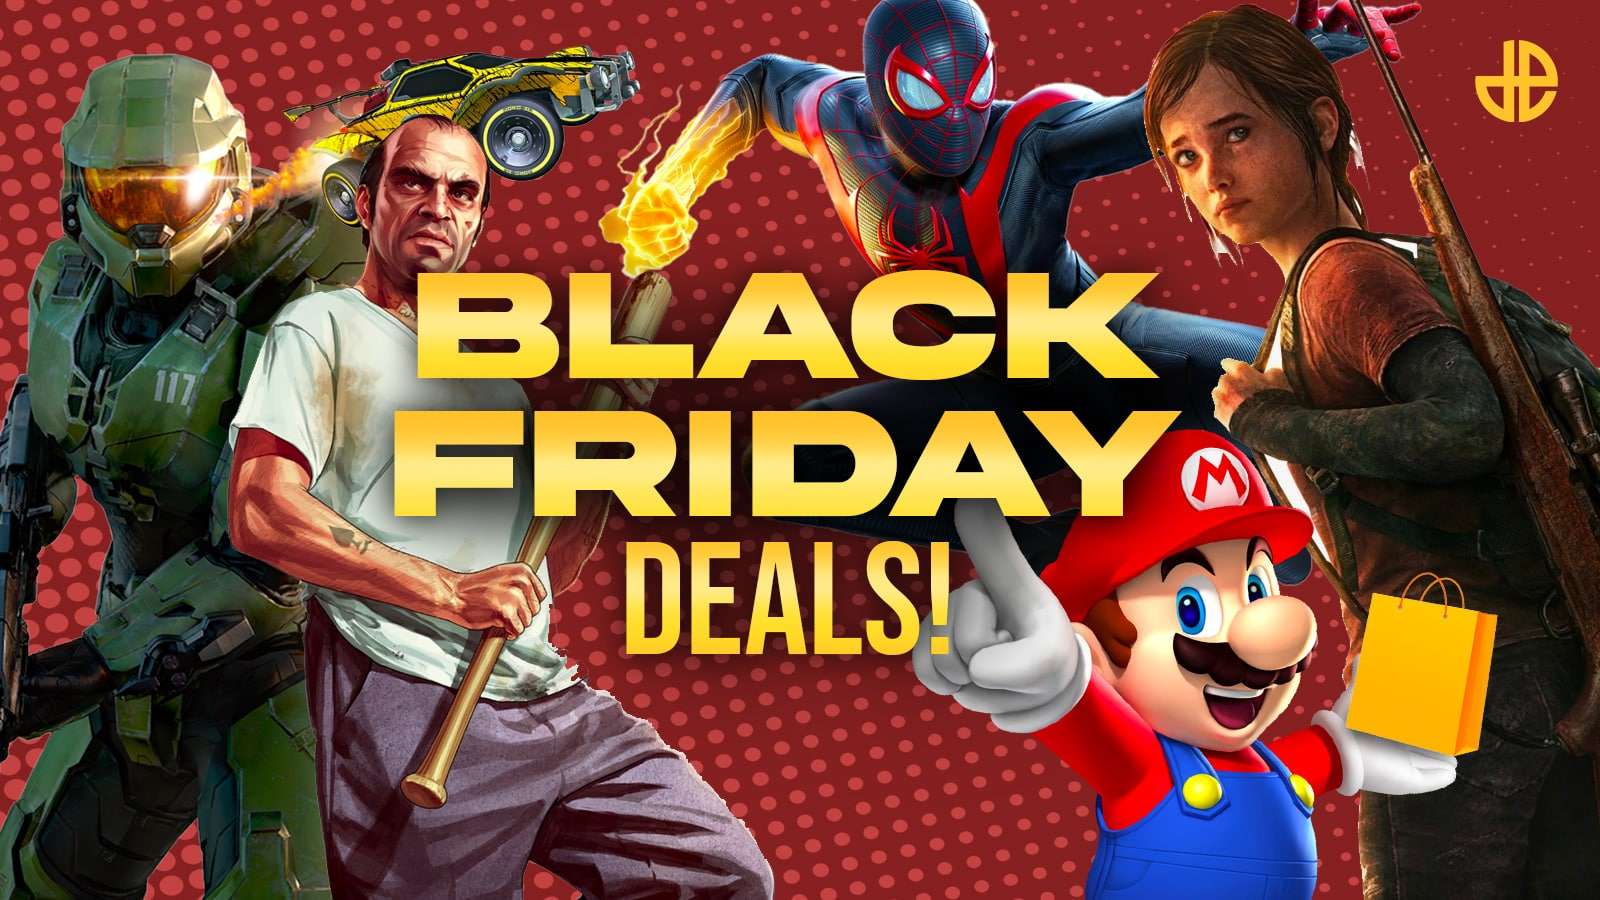 Black Friday deals header